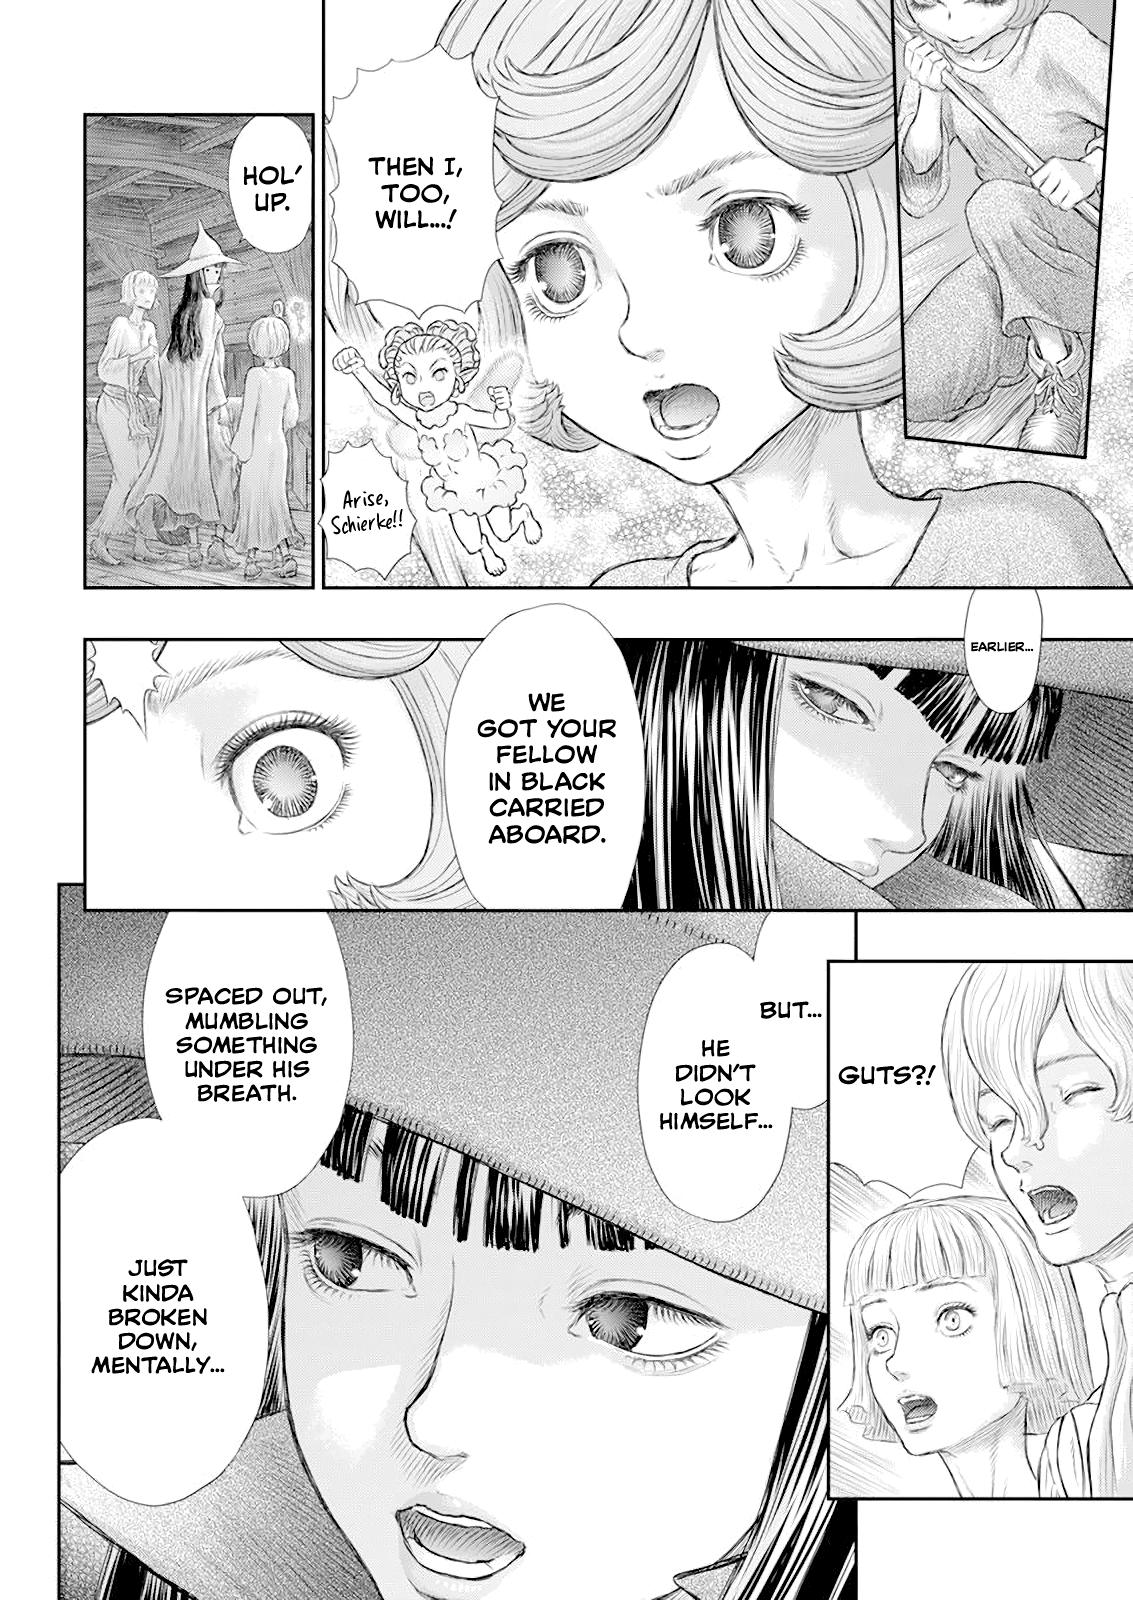 Berserk Manga Chapter 370 image 09